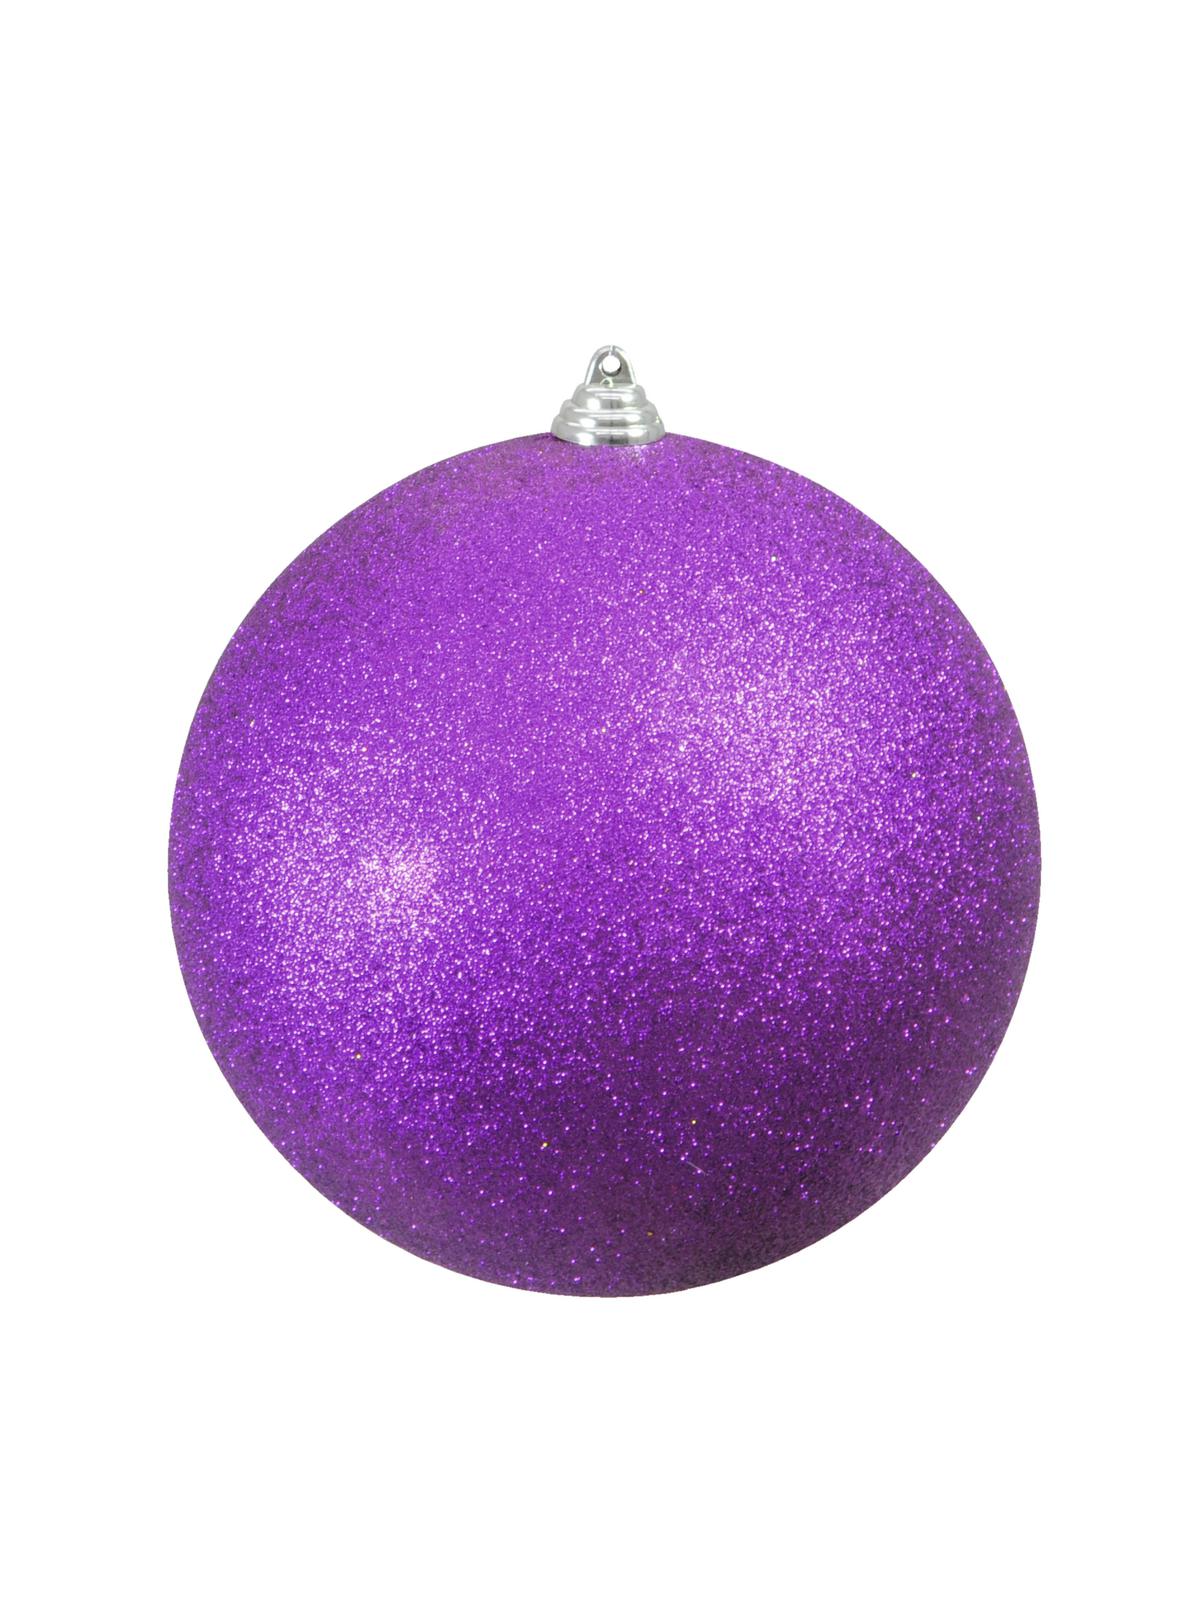 Vánoční ozdoba 20cm, fialová koule s glitry